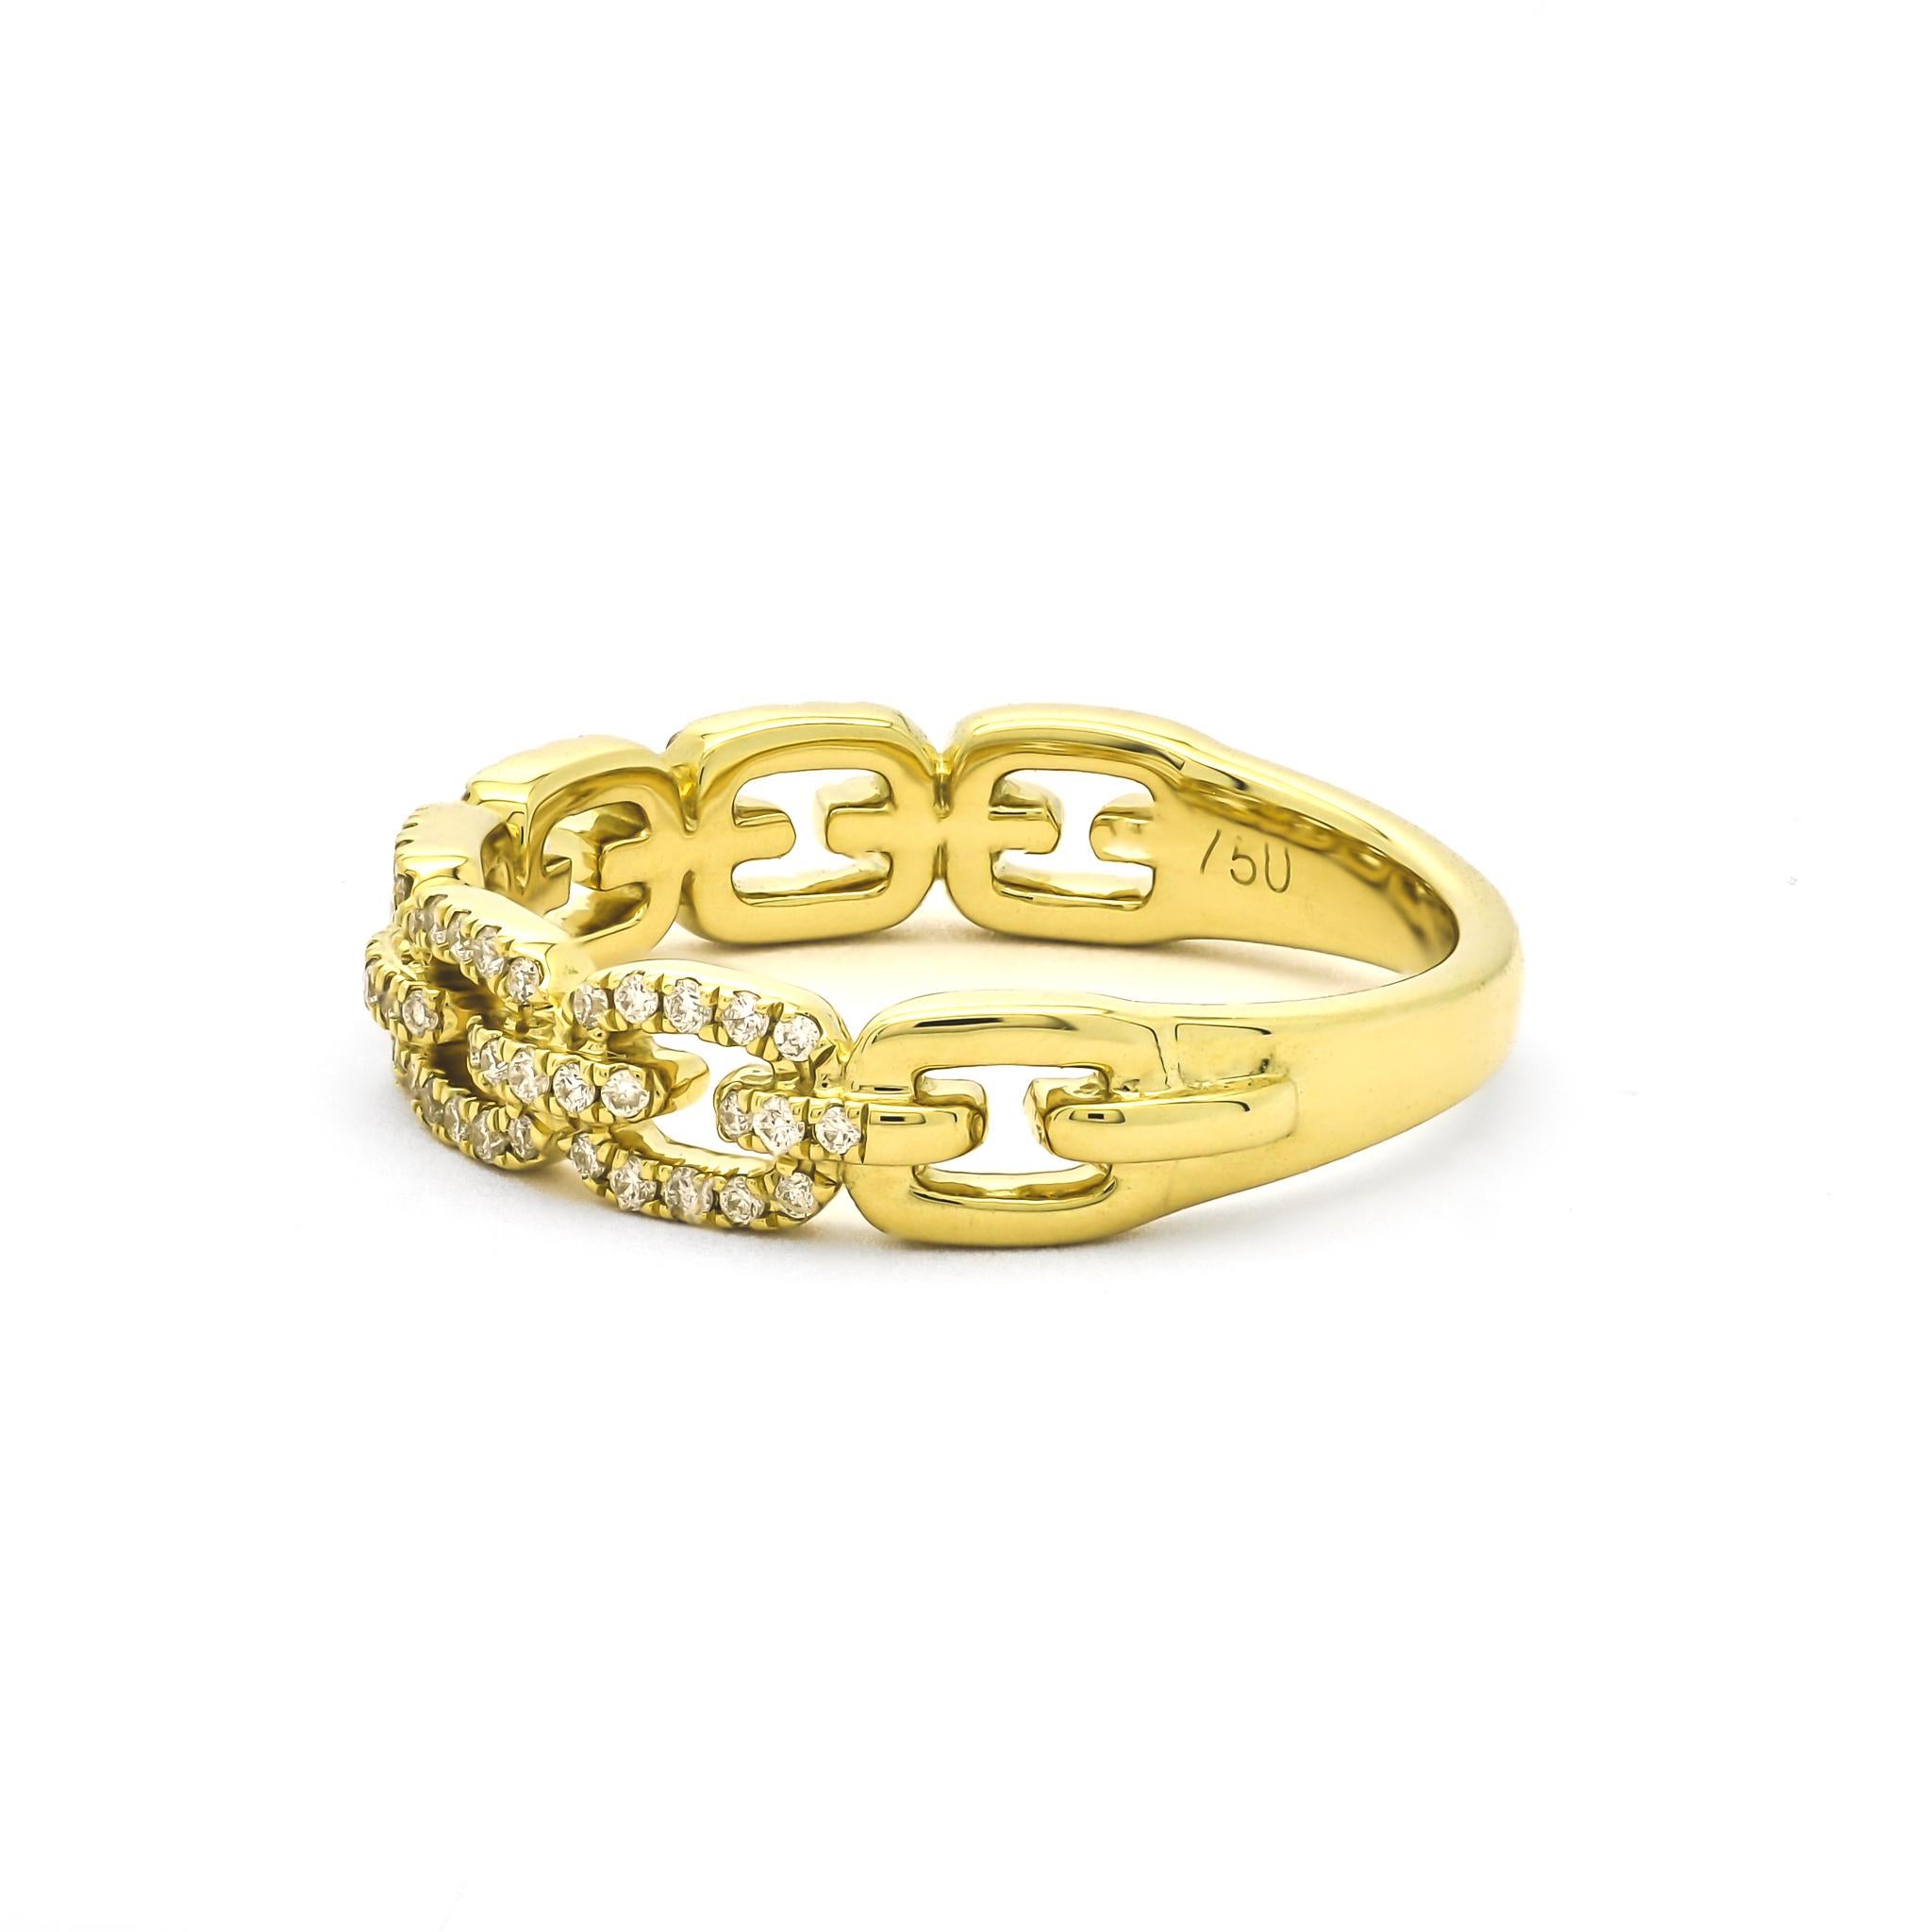 Tauchen Sie ein in die Welt der zeitgenössischen Eleganz mit dem Naturdiamanten 0,28 Karat 18 Karat Gelbgold Kettengliedring. Dieses bemerkenswerte Schmuckstück verbindet nahtlos zeitlosen Charme mit modernem Designgefühl. 

Dieser aus strahlendem